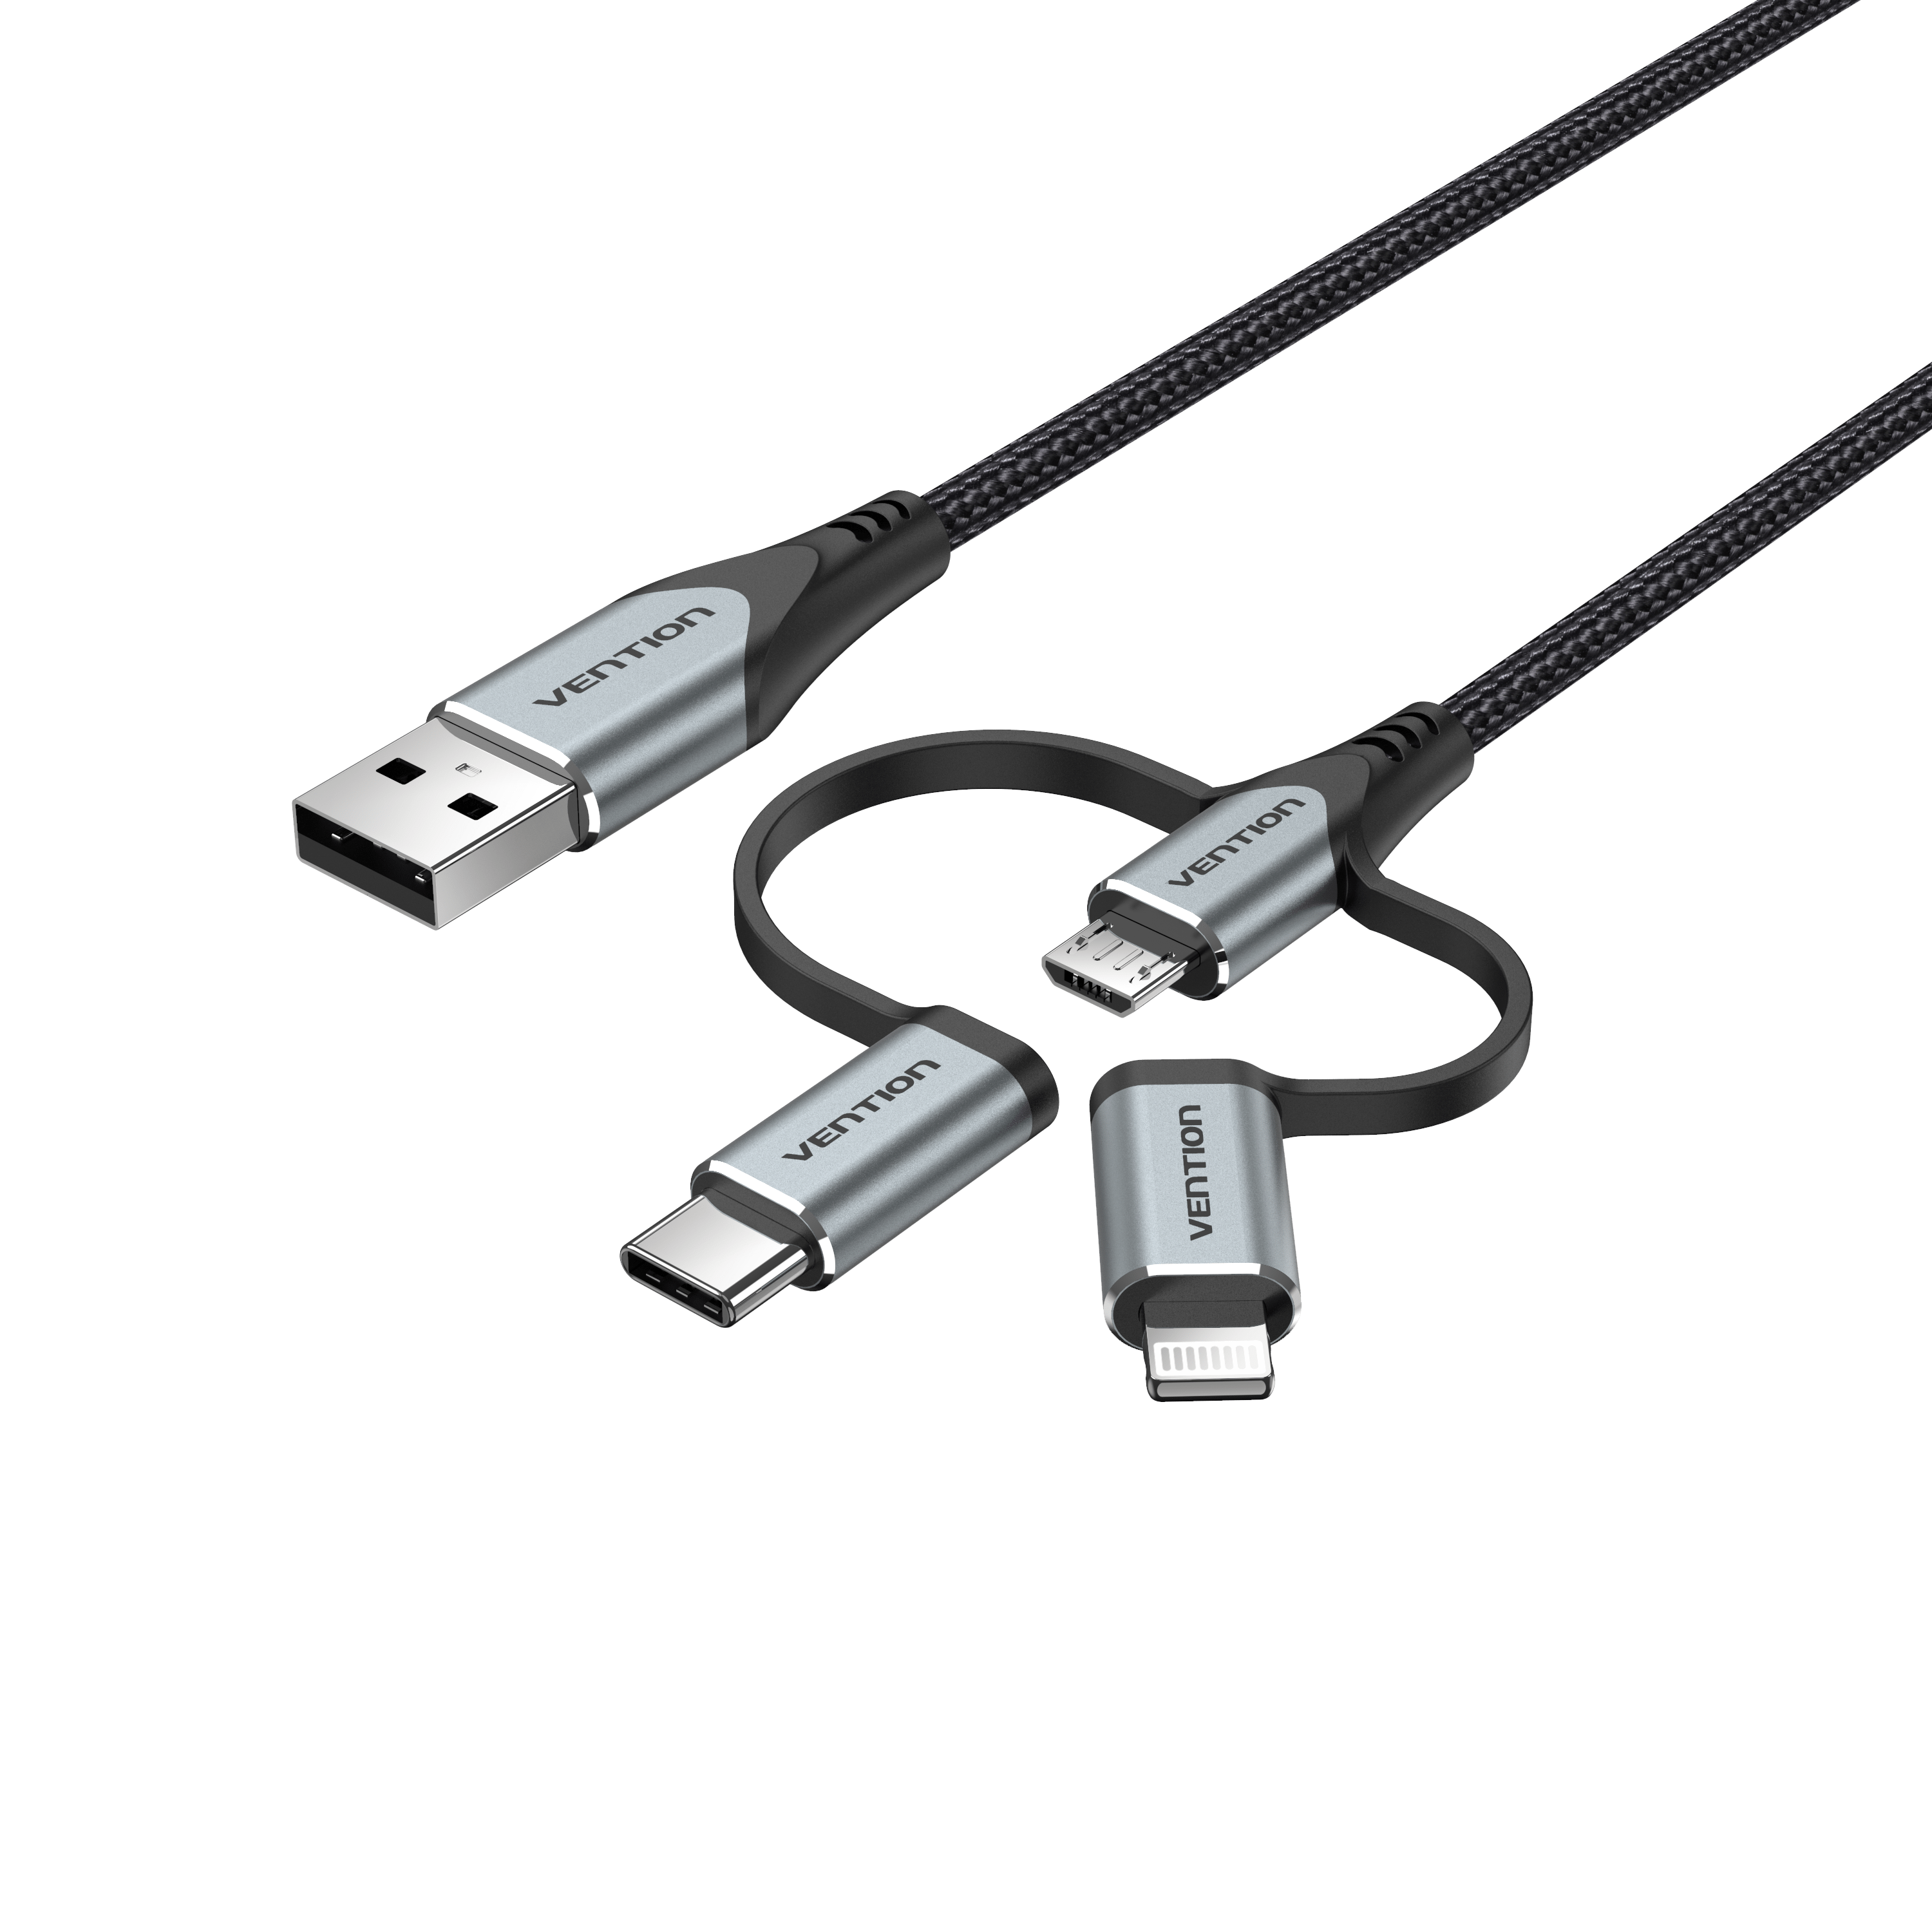 Câble USB embout magnétique rotatif connectique micro-USB,Type C ou  Lightning pour Samsung Xiaomi iPhone 11 Pro XS